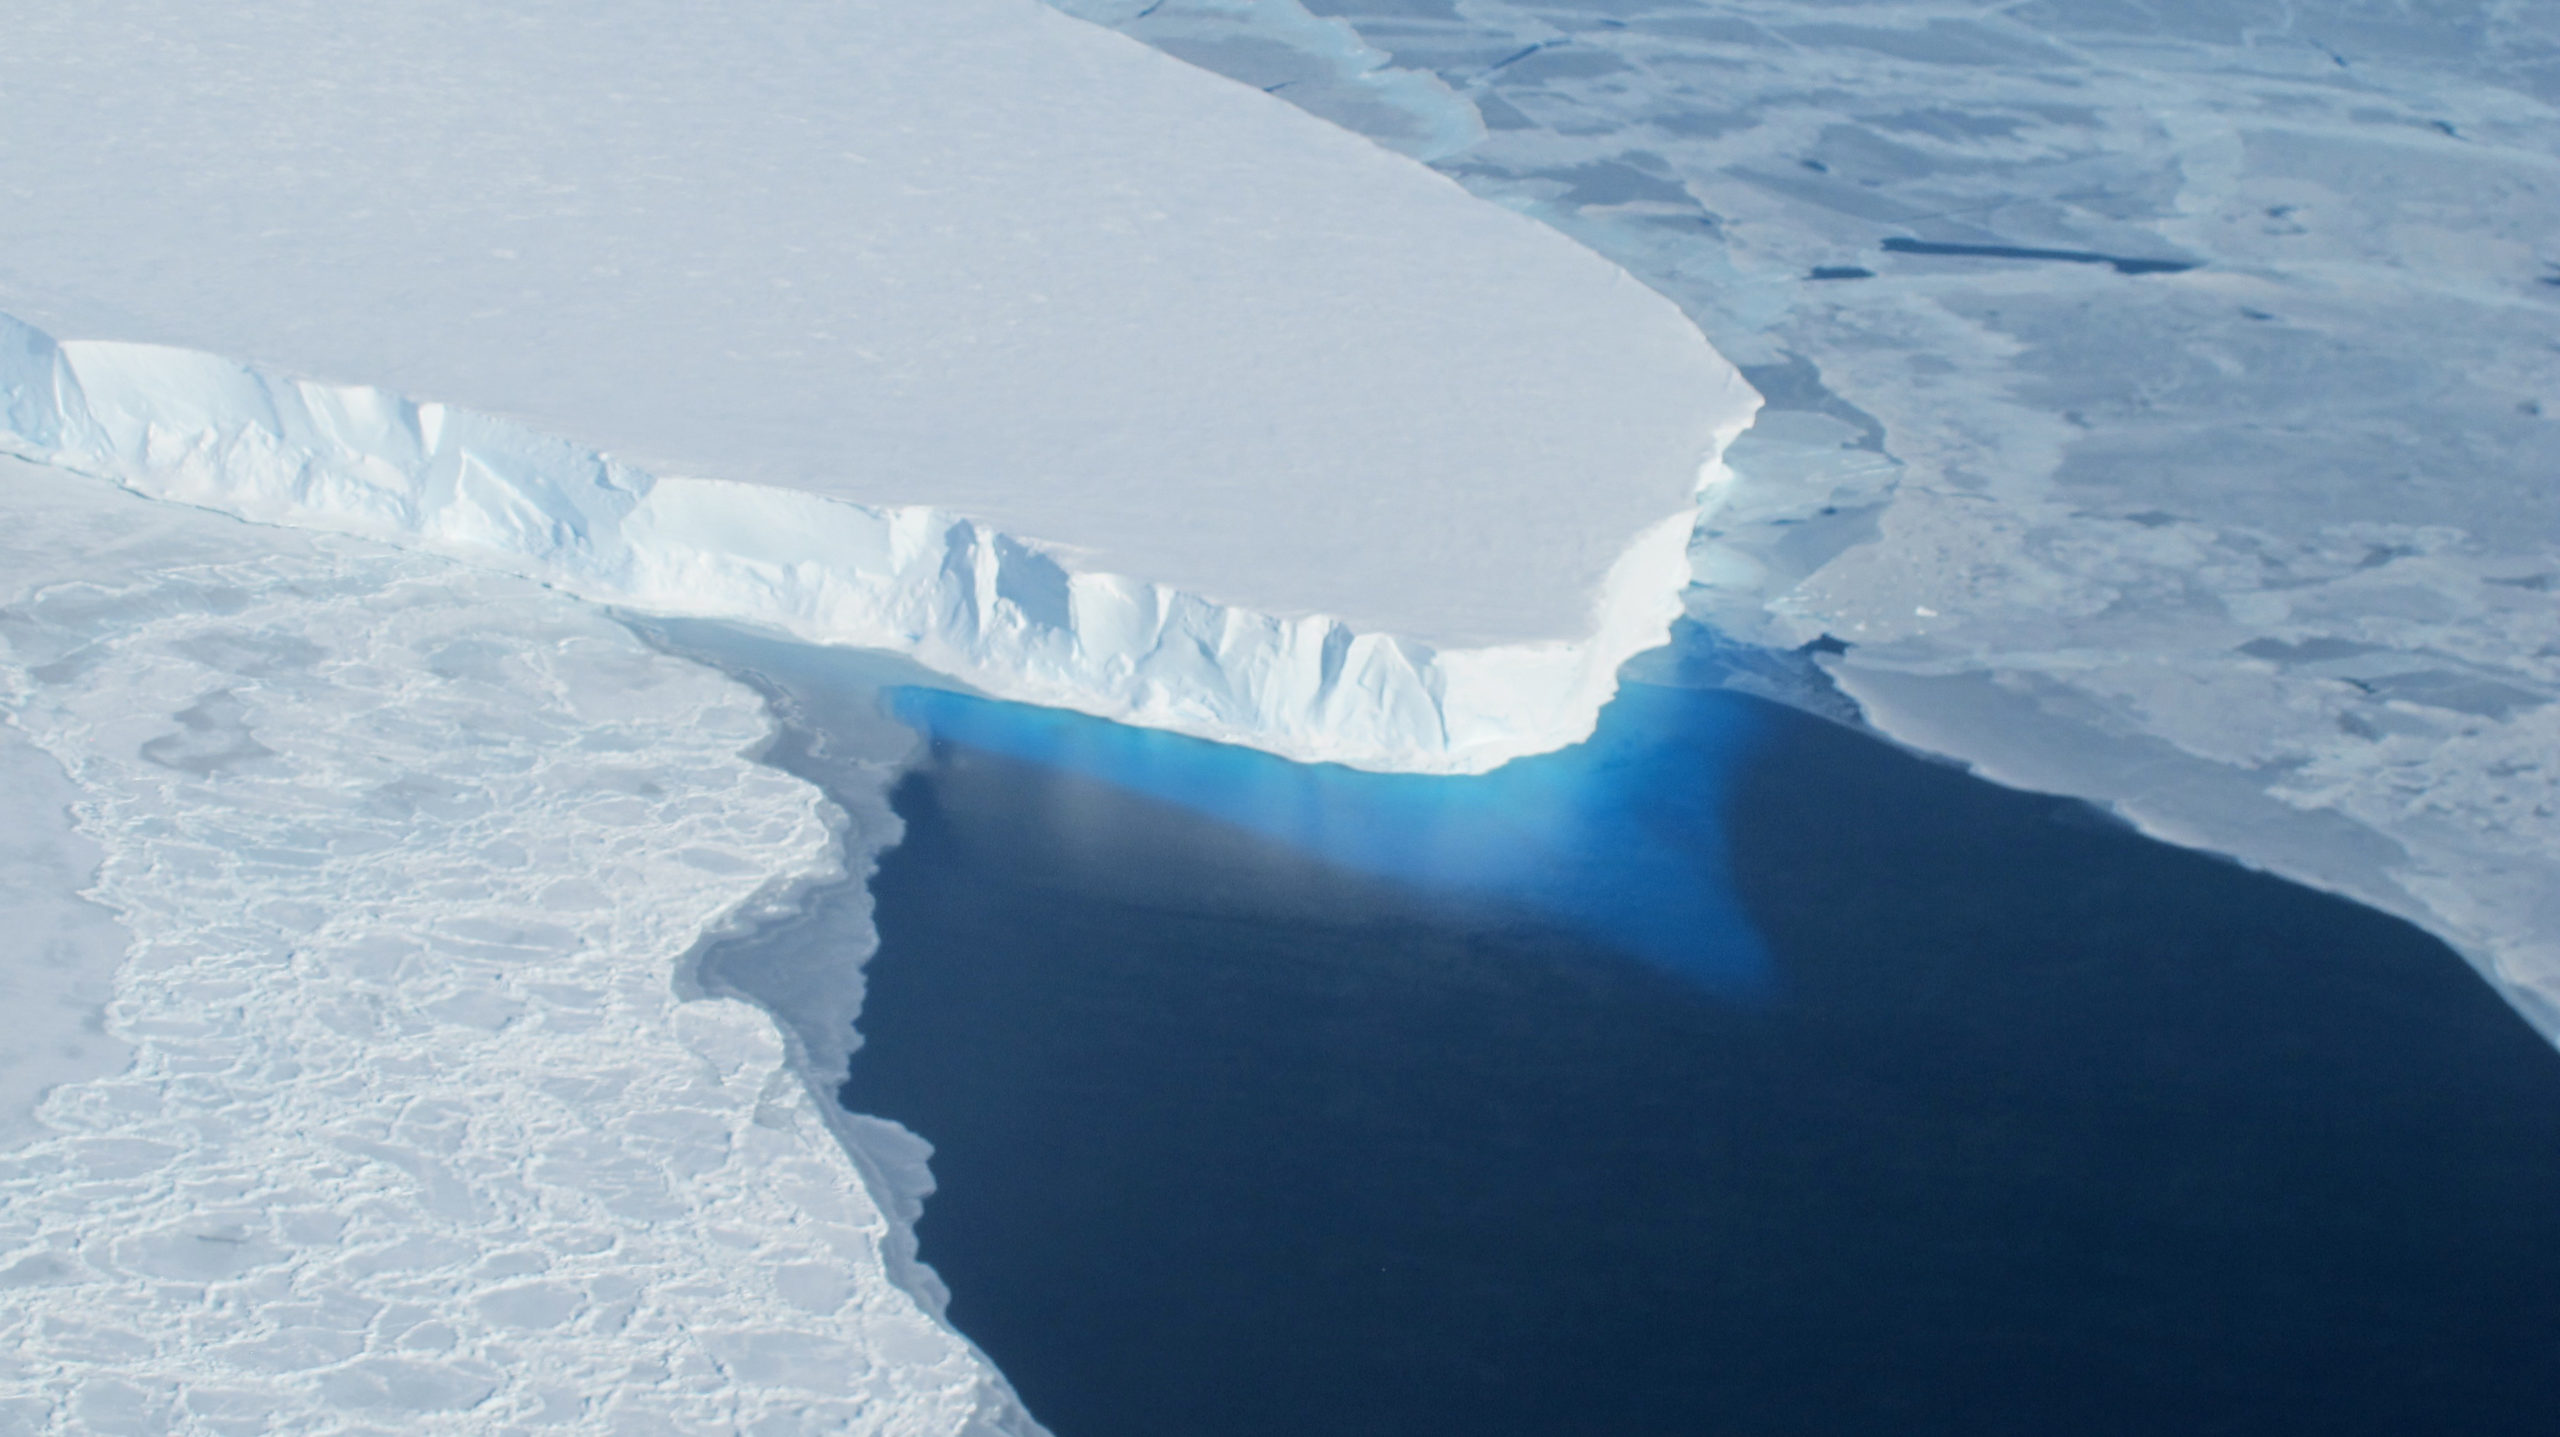 Ледники тающего тонкого льда грозят уничтожить планету. Но Россия может этим воспользоваться